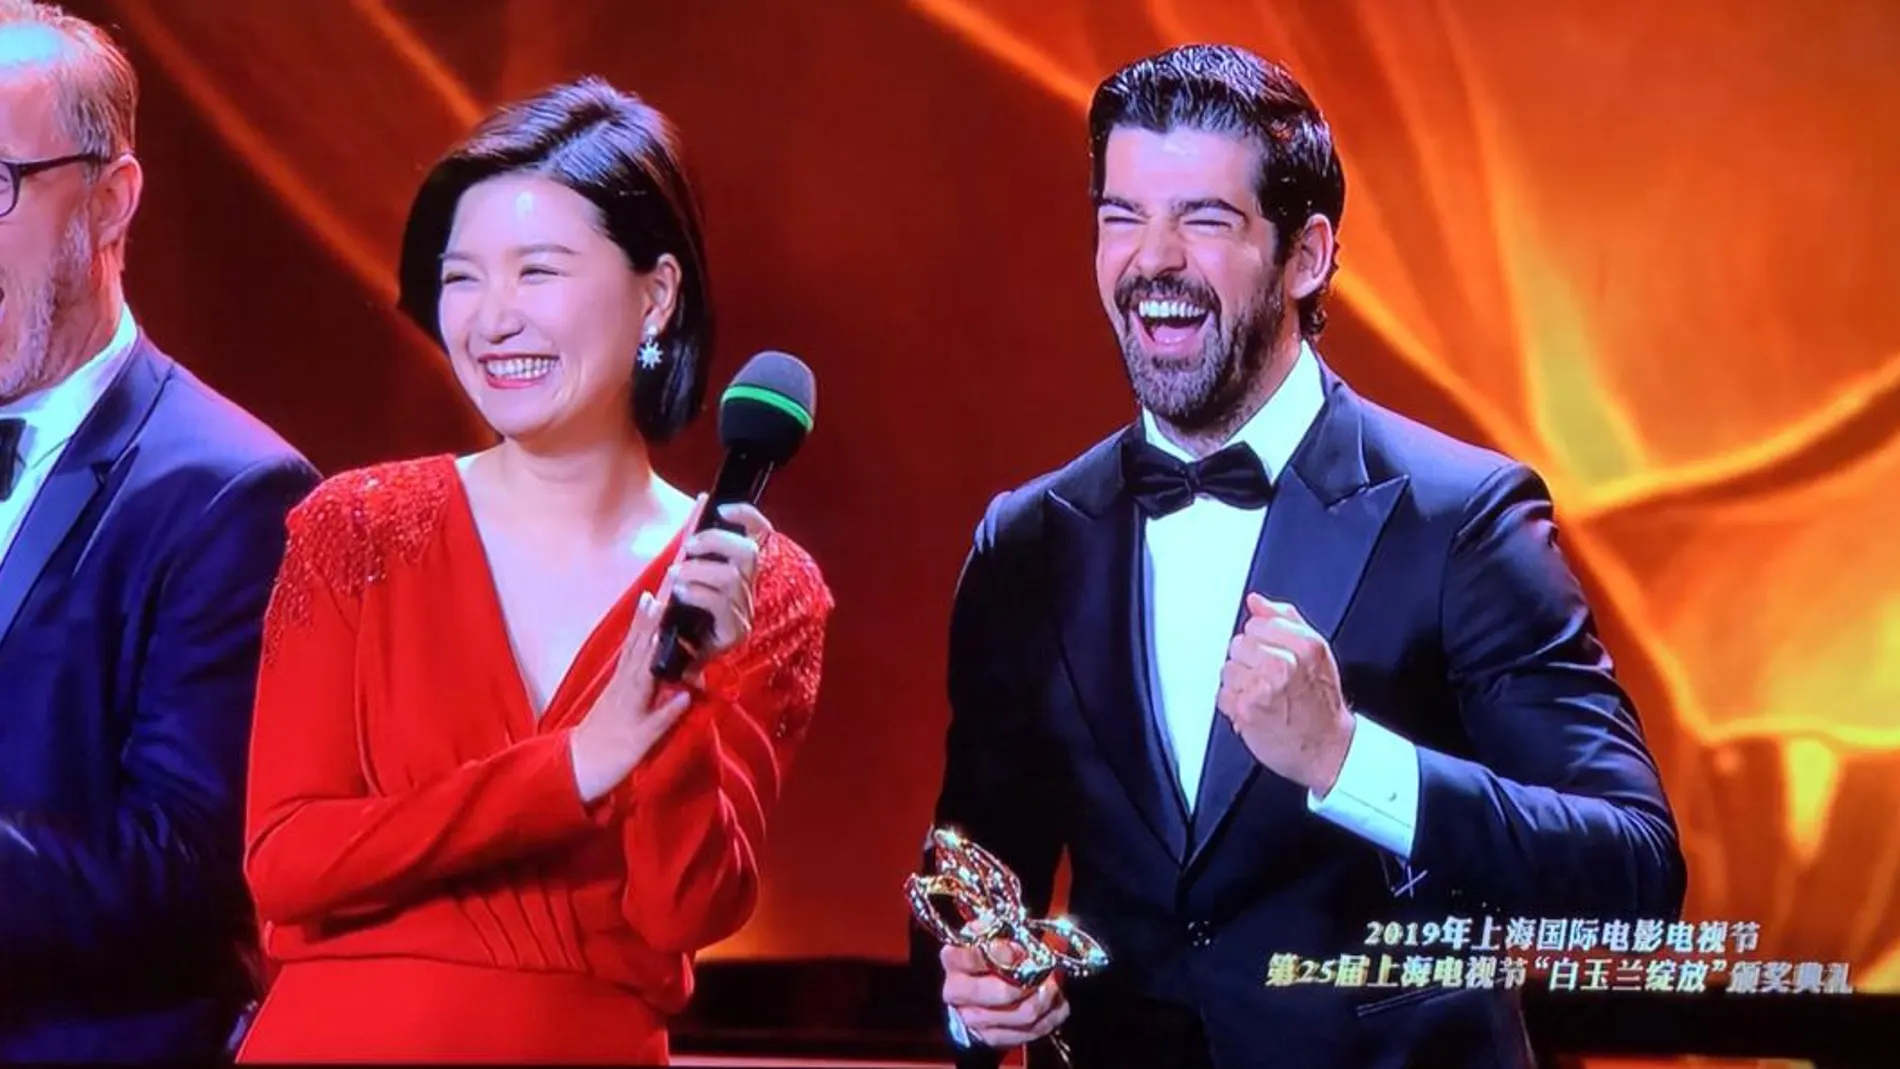 ‘Presunto culpable’ gana el Premio a Mejor Serie Extranjera en el Festival Internacional de Shanghai